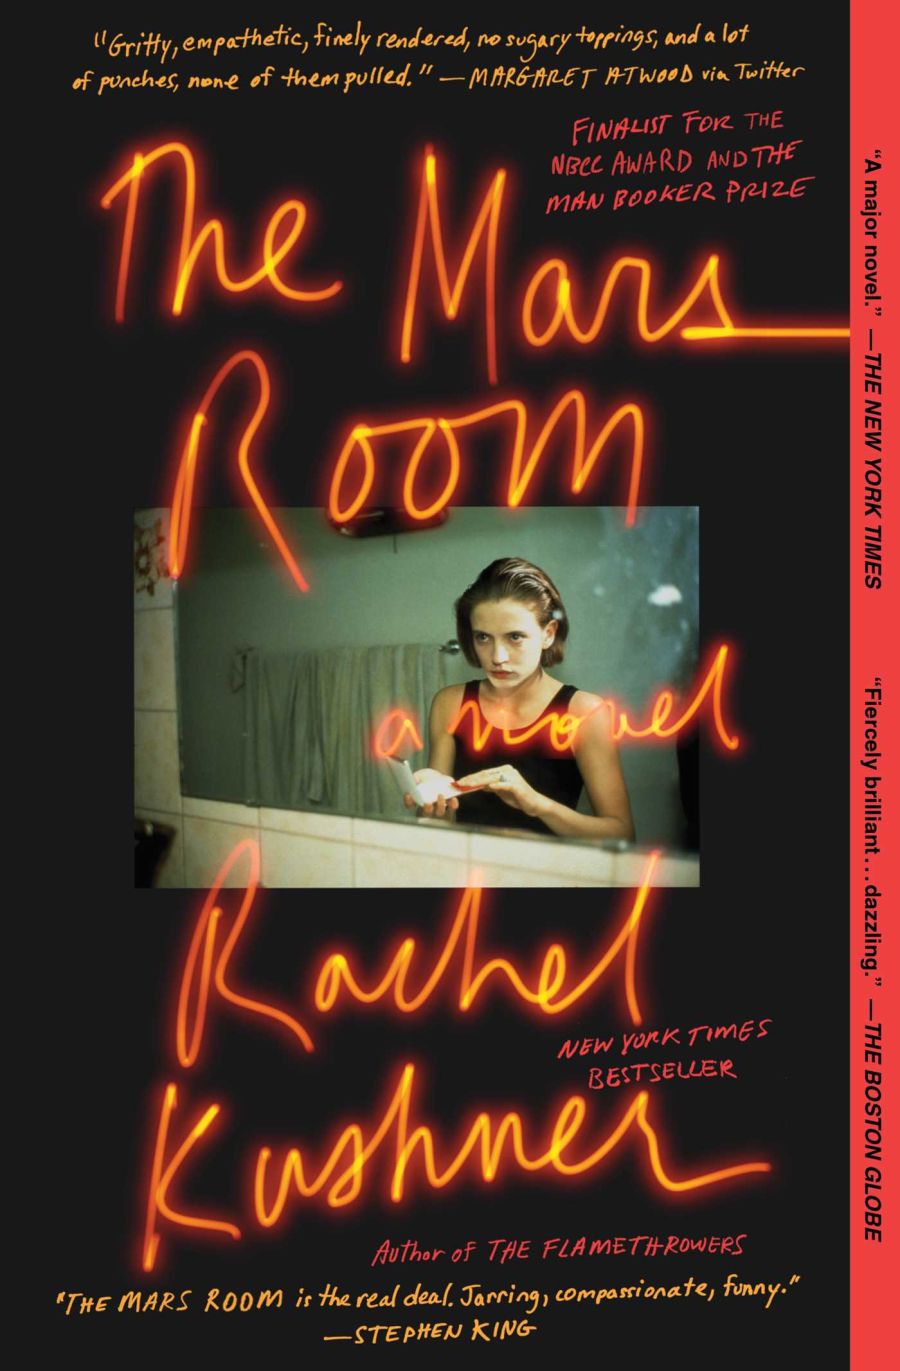 book cover: The mars room, by Rachel Kushner.